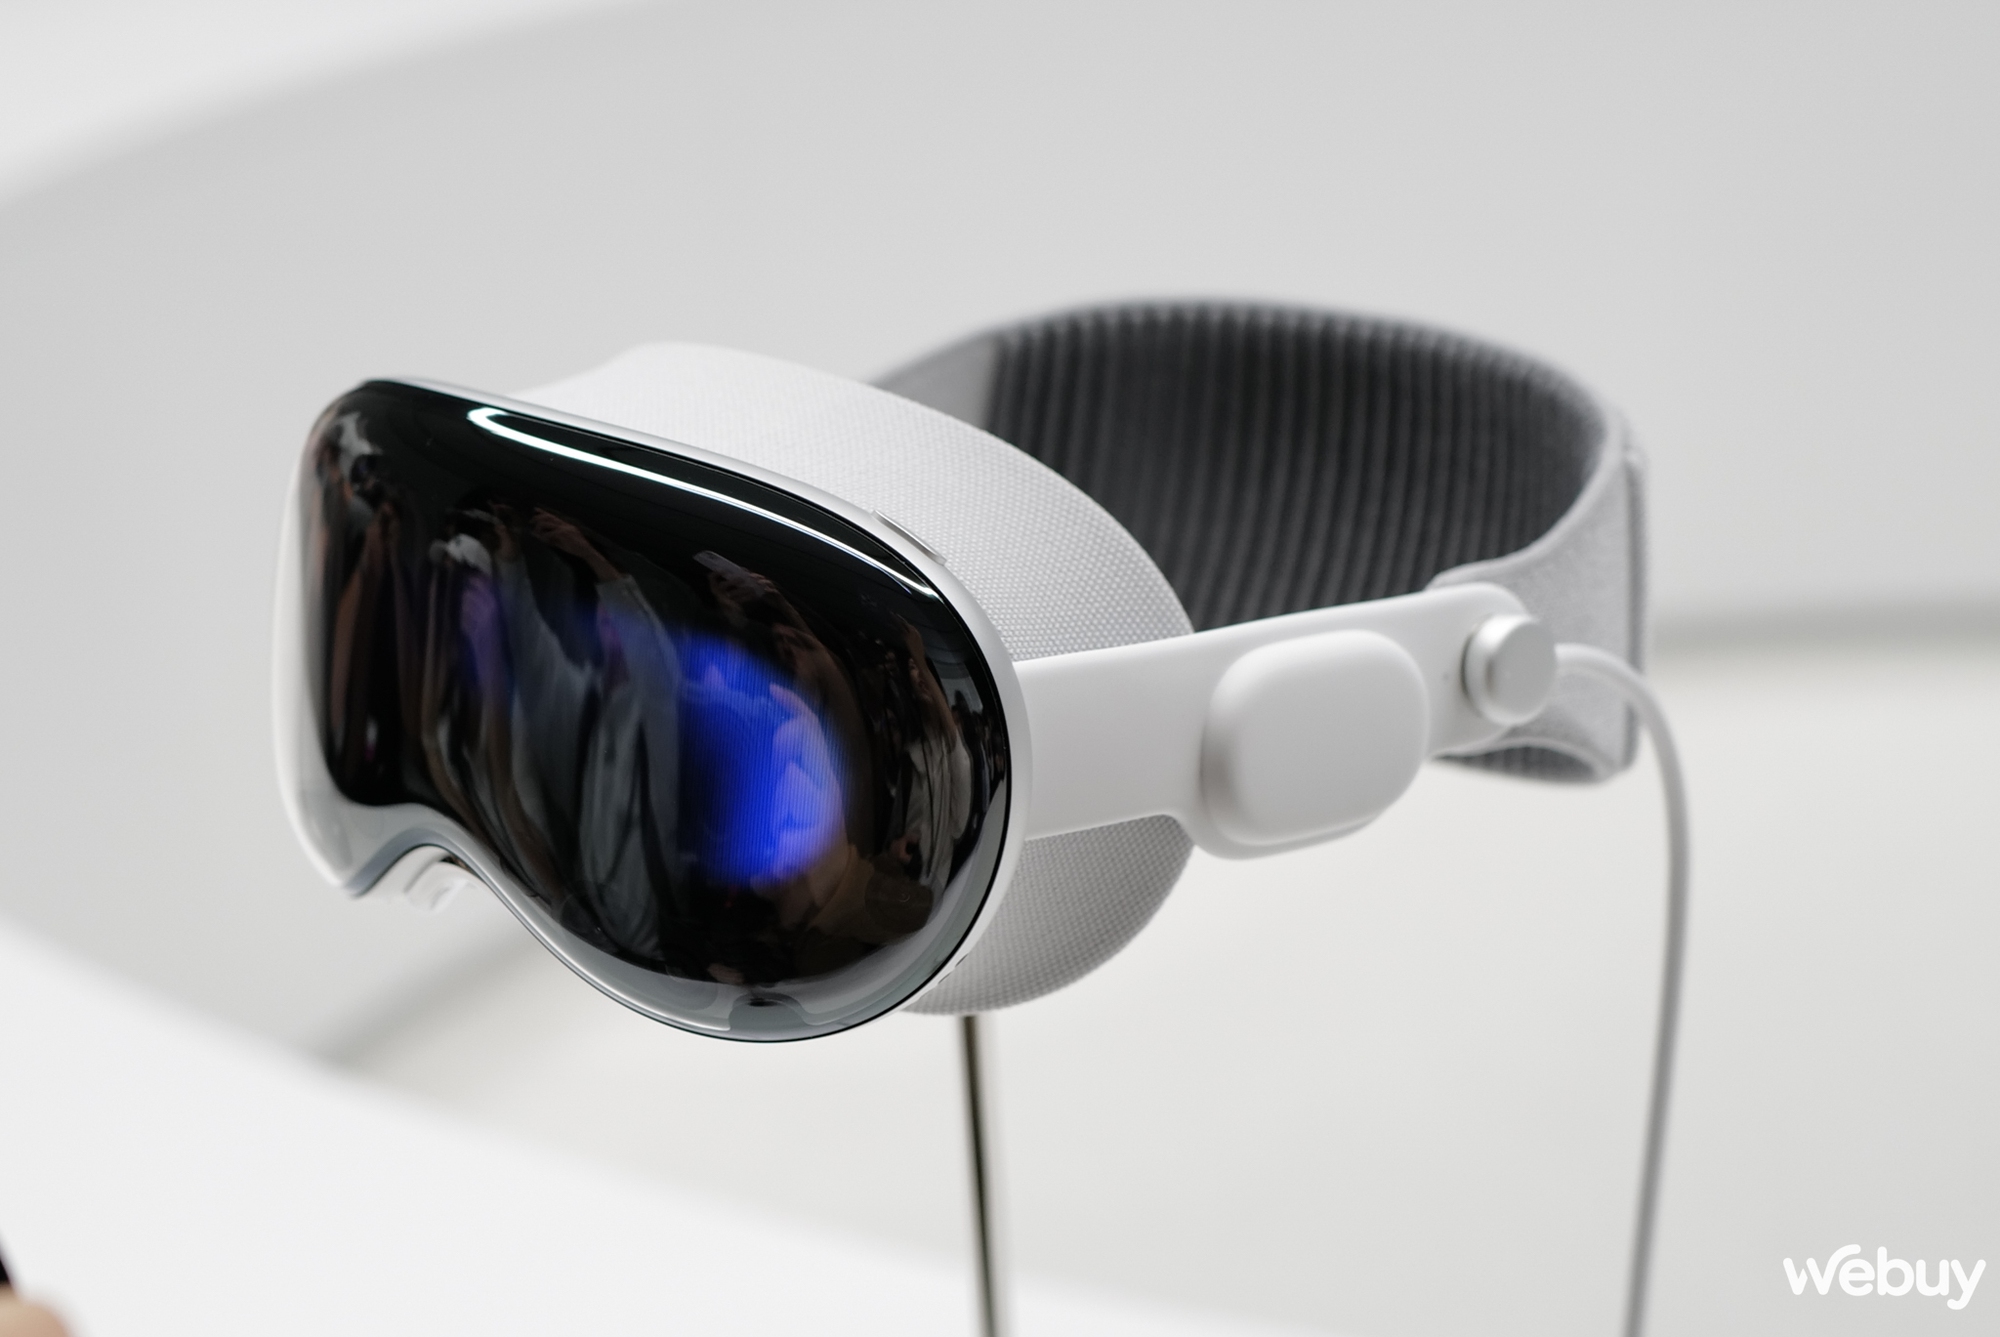 Cận cảnh kính thực tế tăng cường Apple Vision Pro giá 3.500 USD mới ra mắt - Ảnh 4.